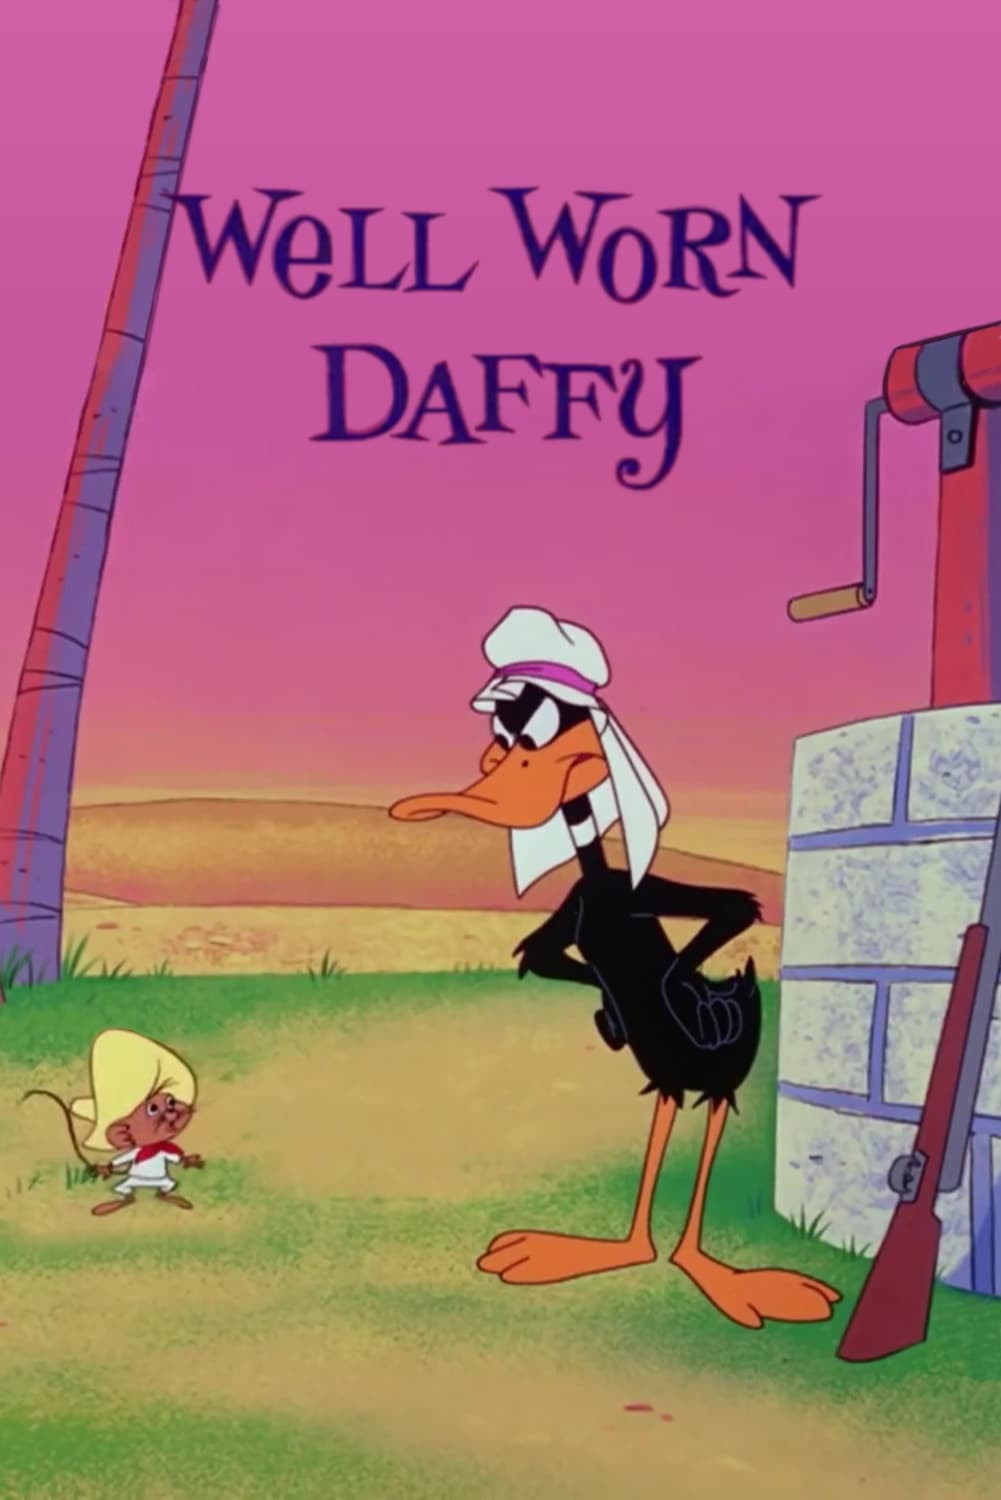 Well Worn Daffy